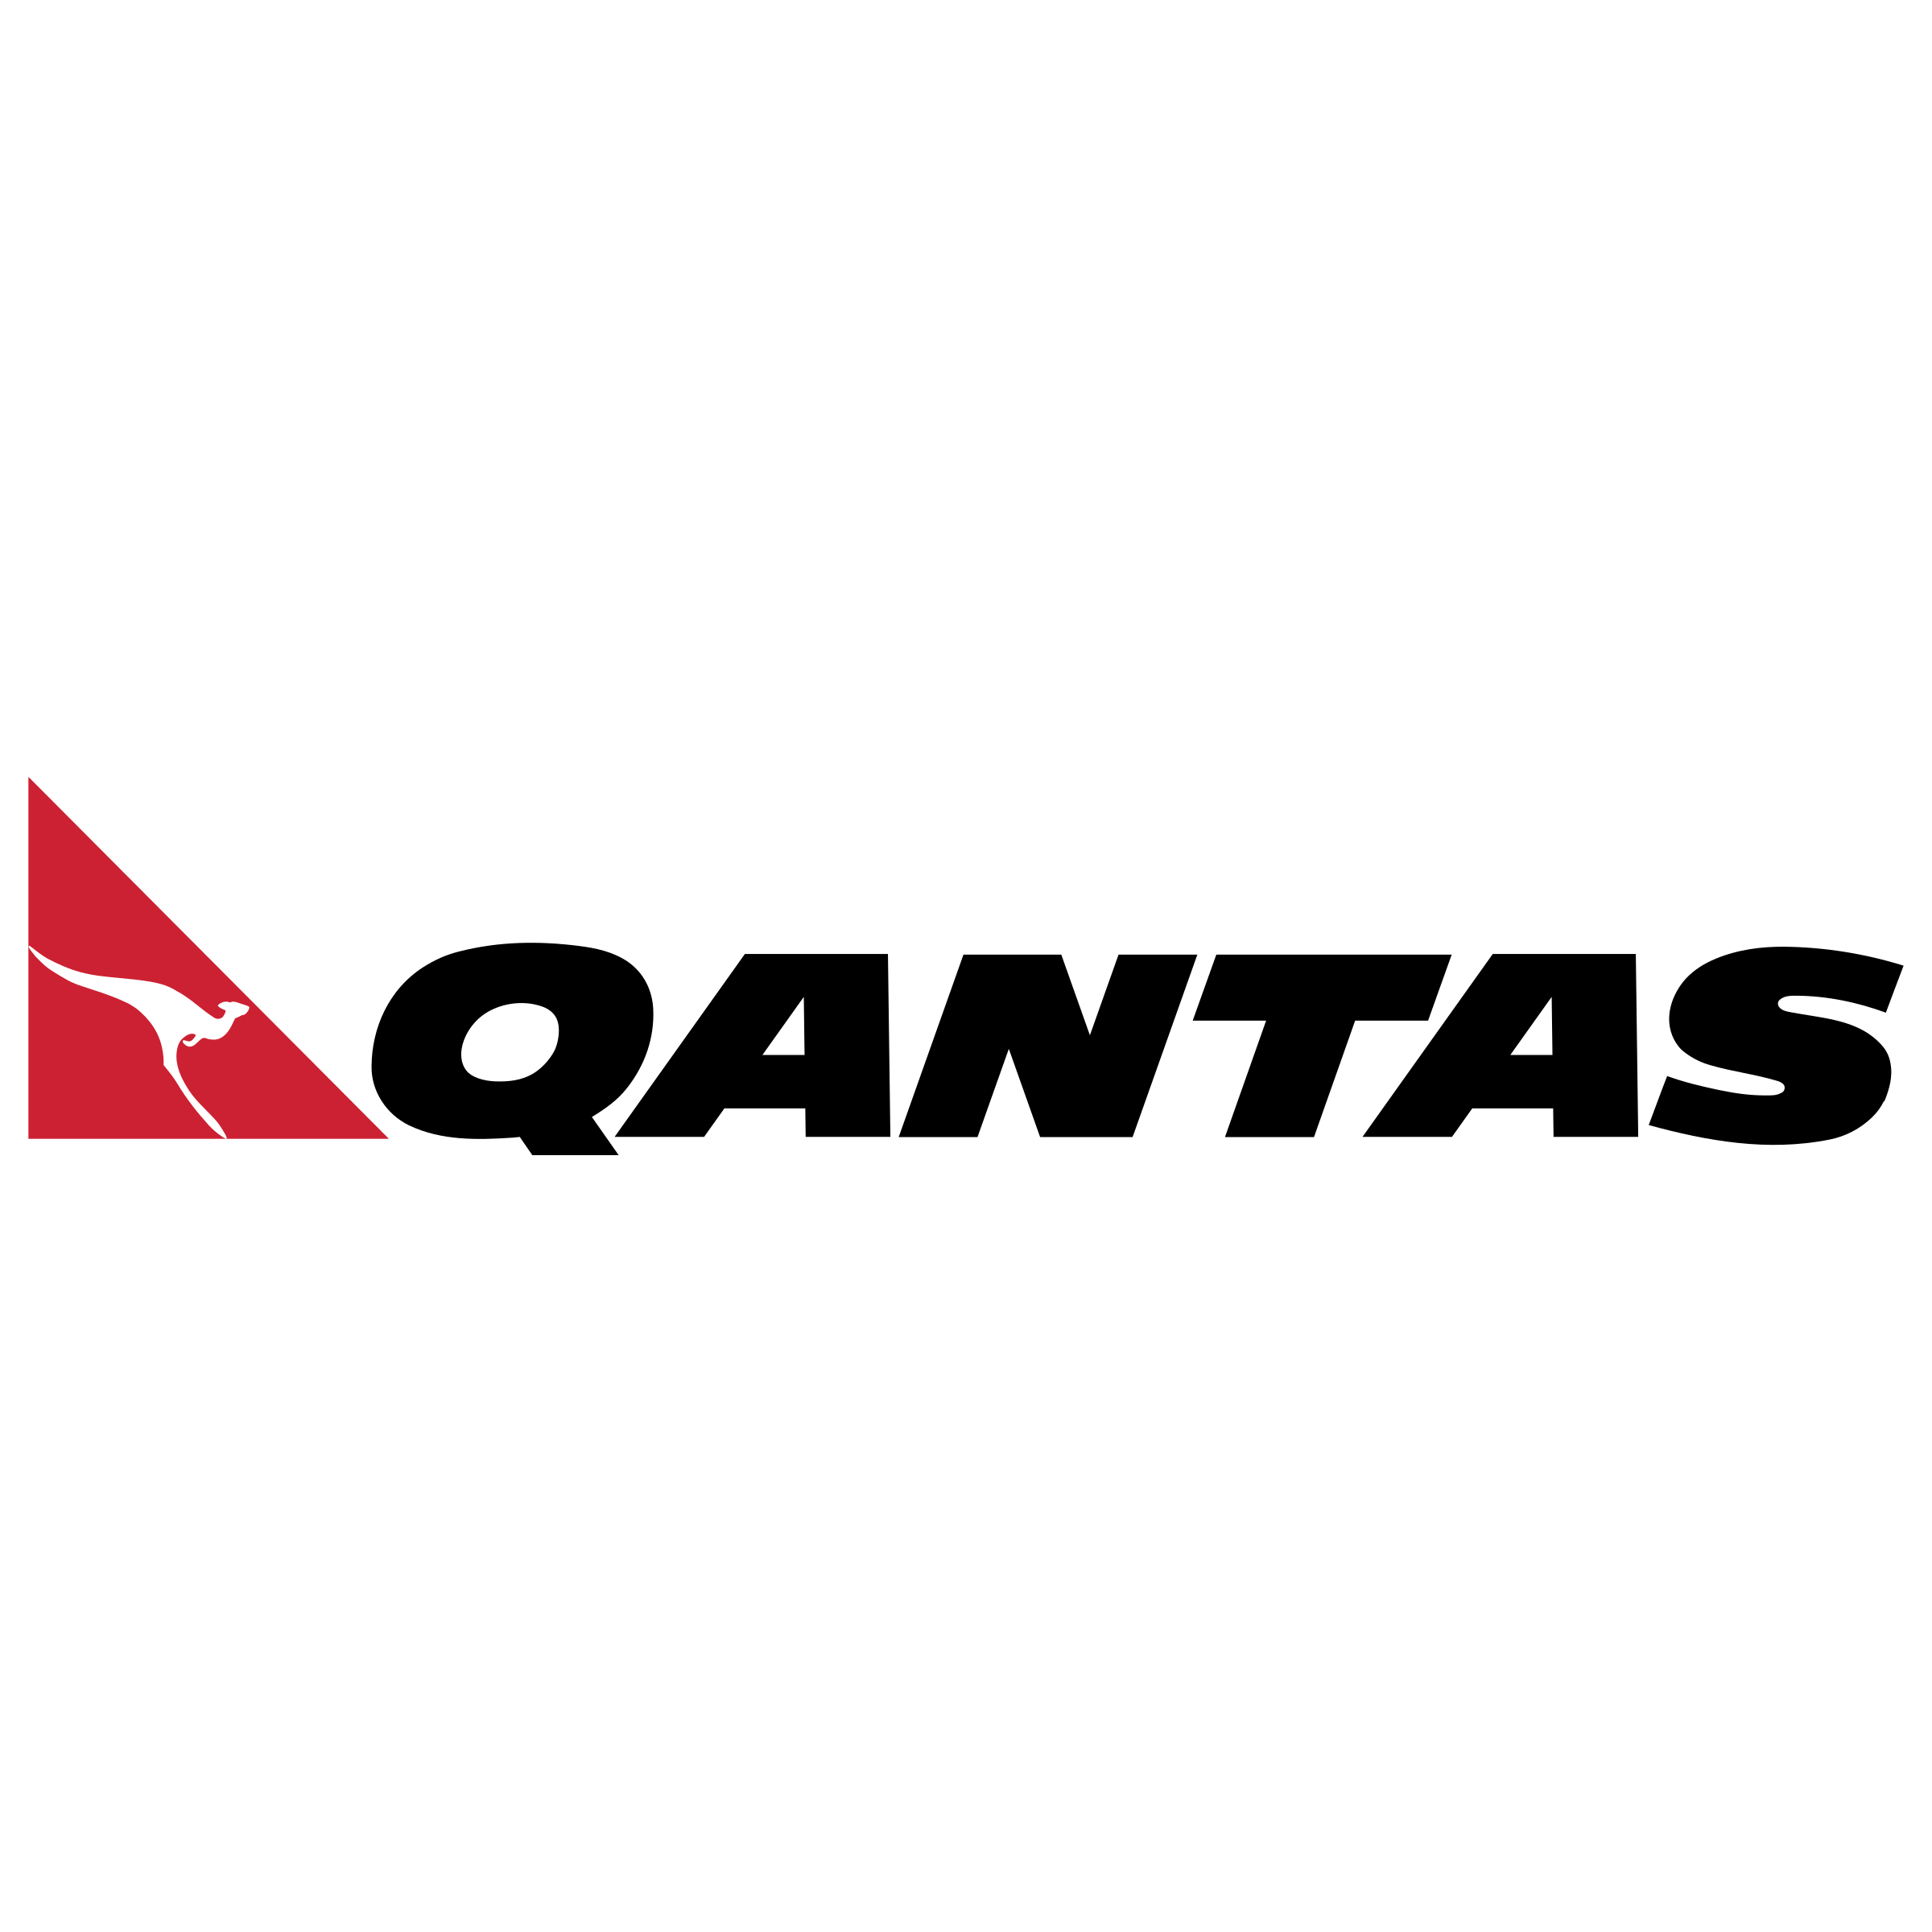 Qantas Logo - Qantas Logo PNG Transparent & SVG Vector